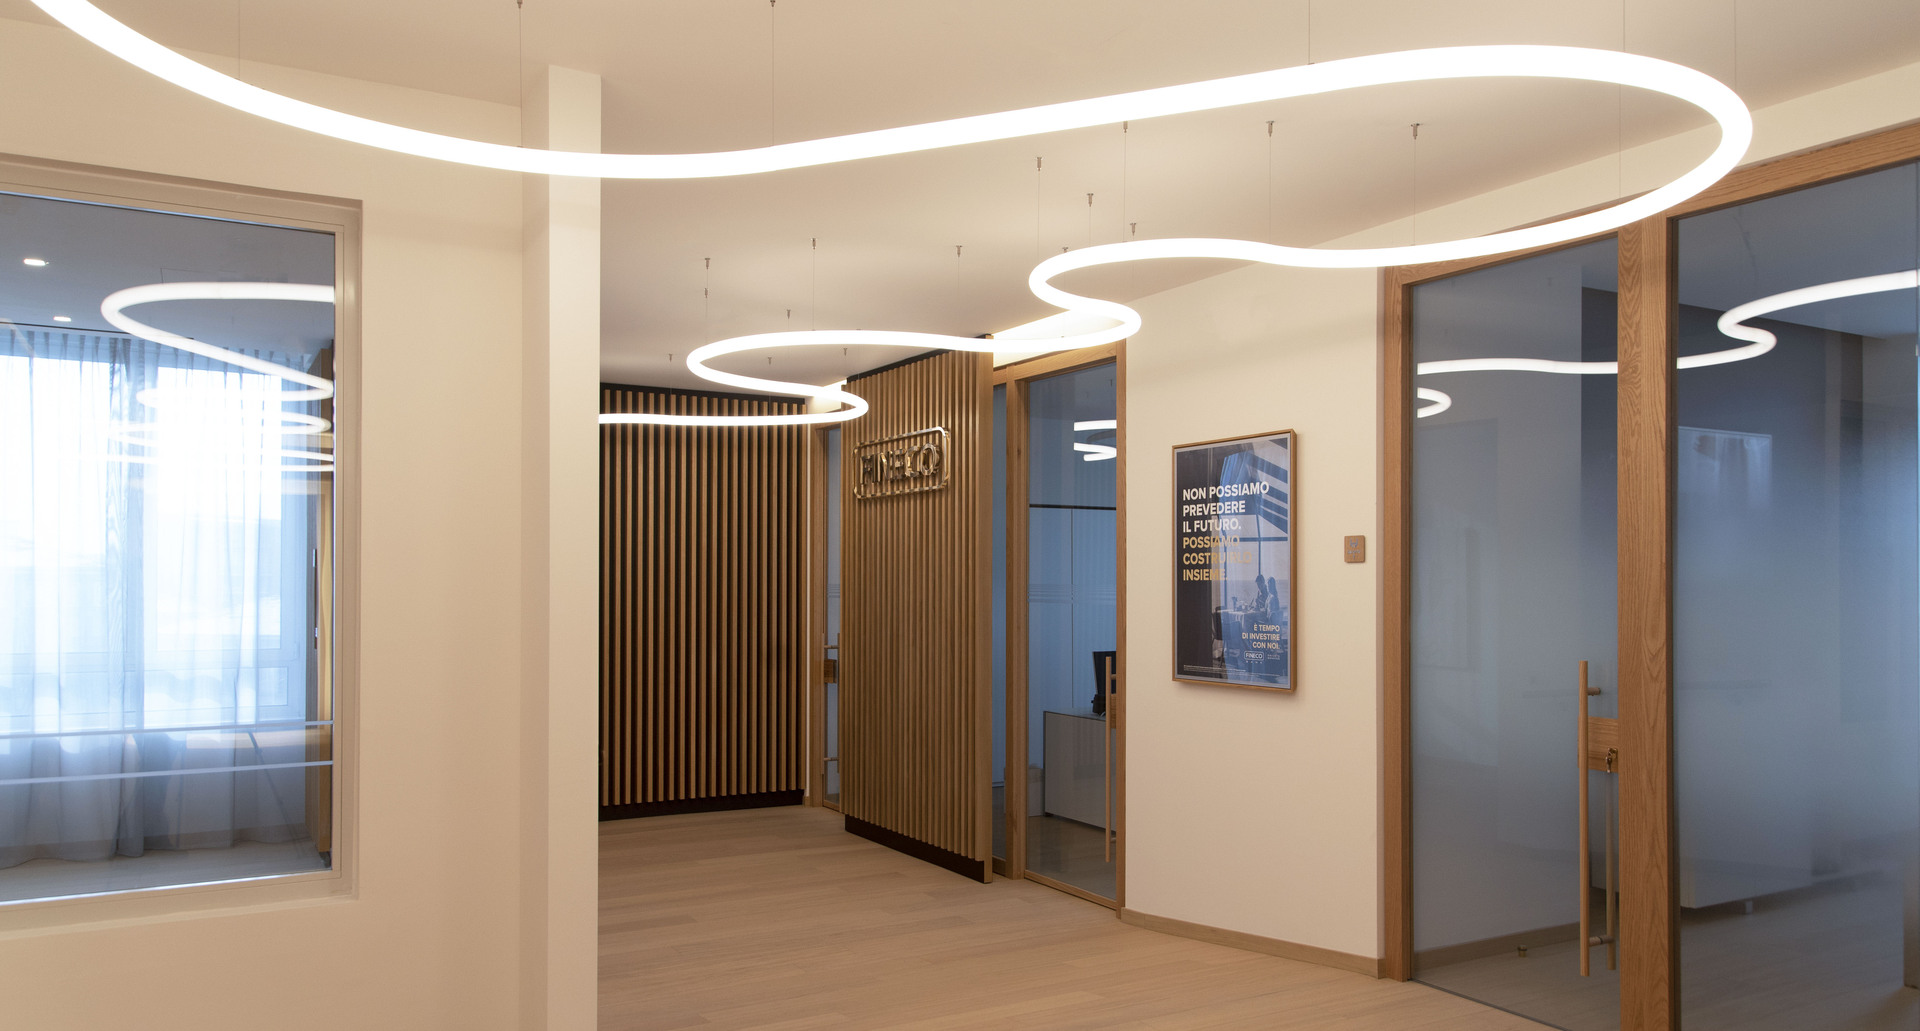 Immagine dell'interno degli uffici con il logo di Fineco. Composizione di Alphabet of Light.